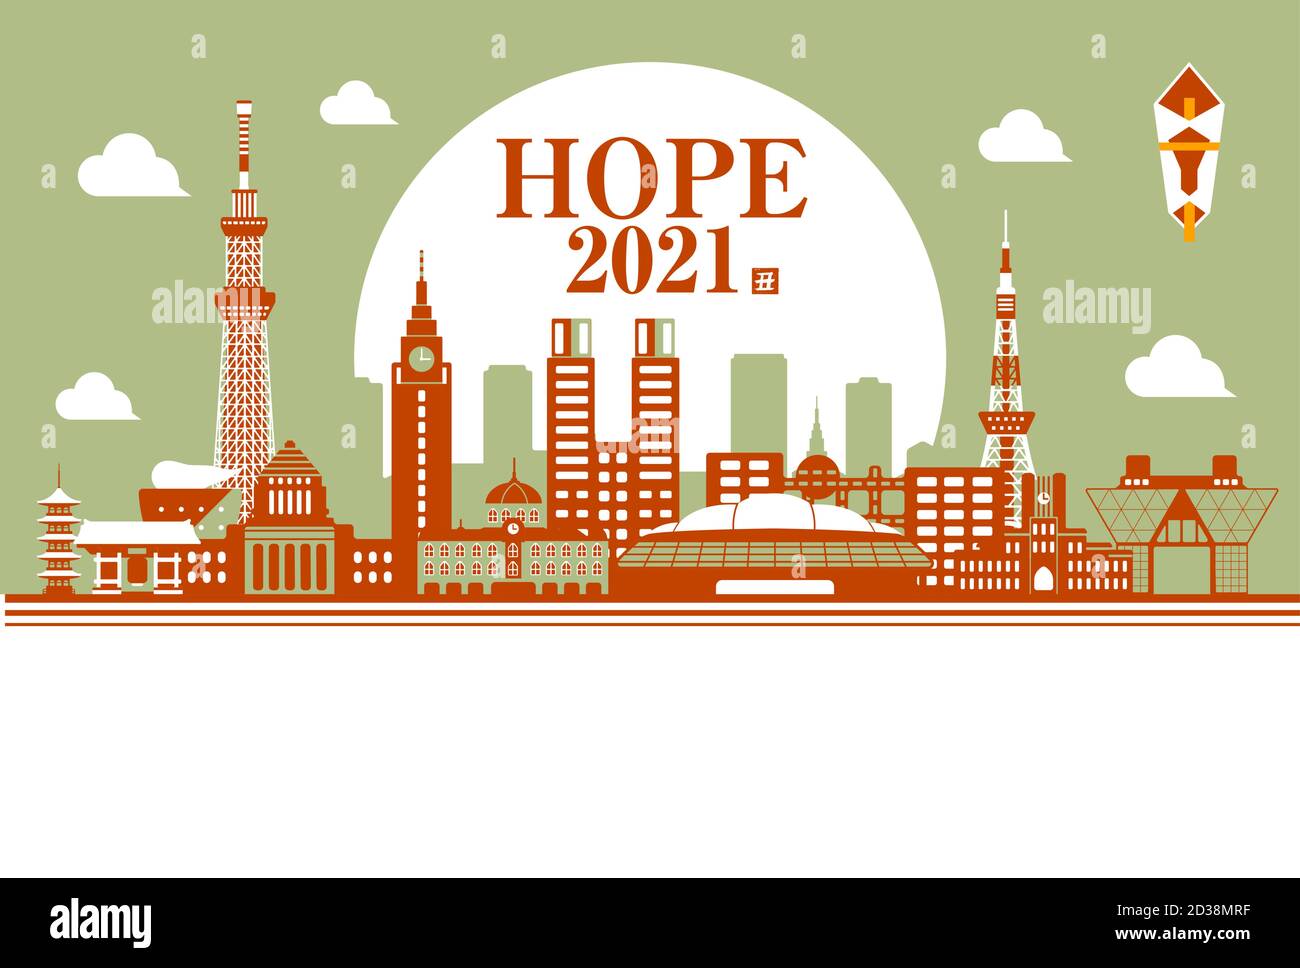 Illustration du modèle de carte de vœux du nouvel an 2021 / Hope Tokyo Illustration de Vecteur